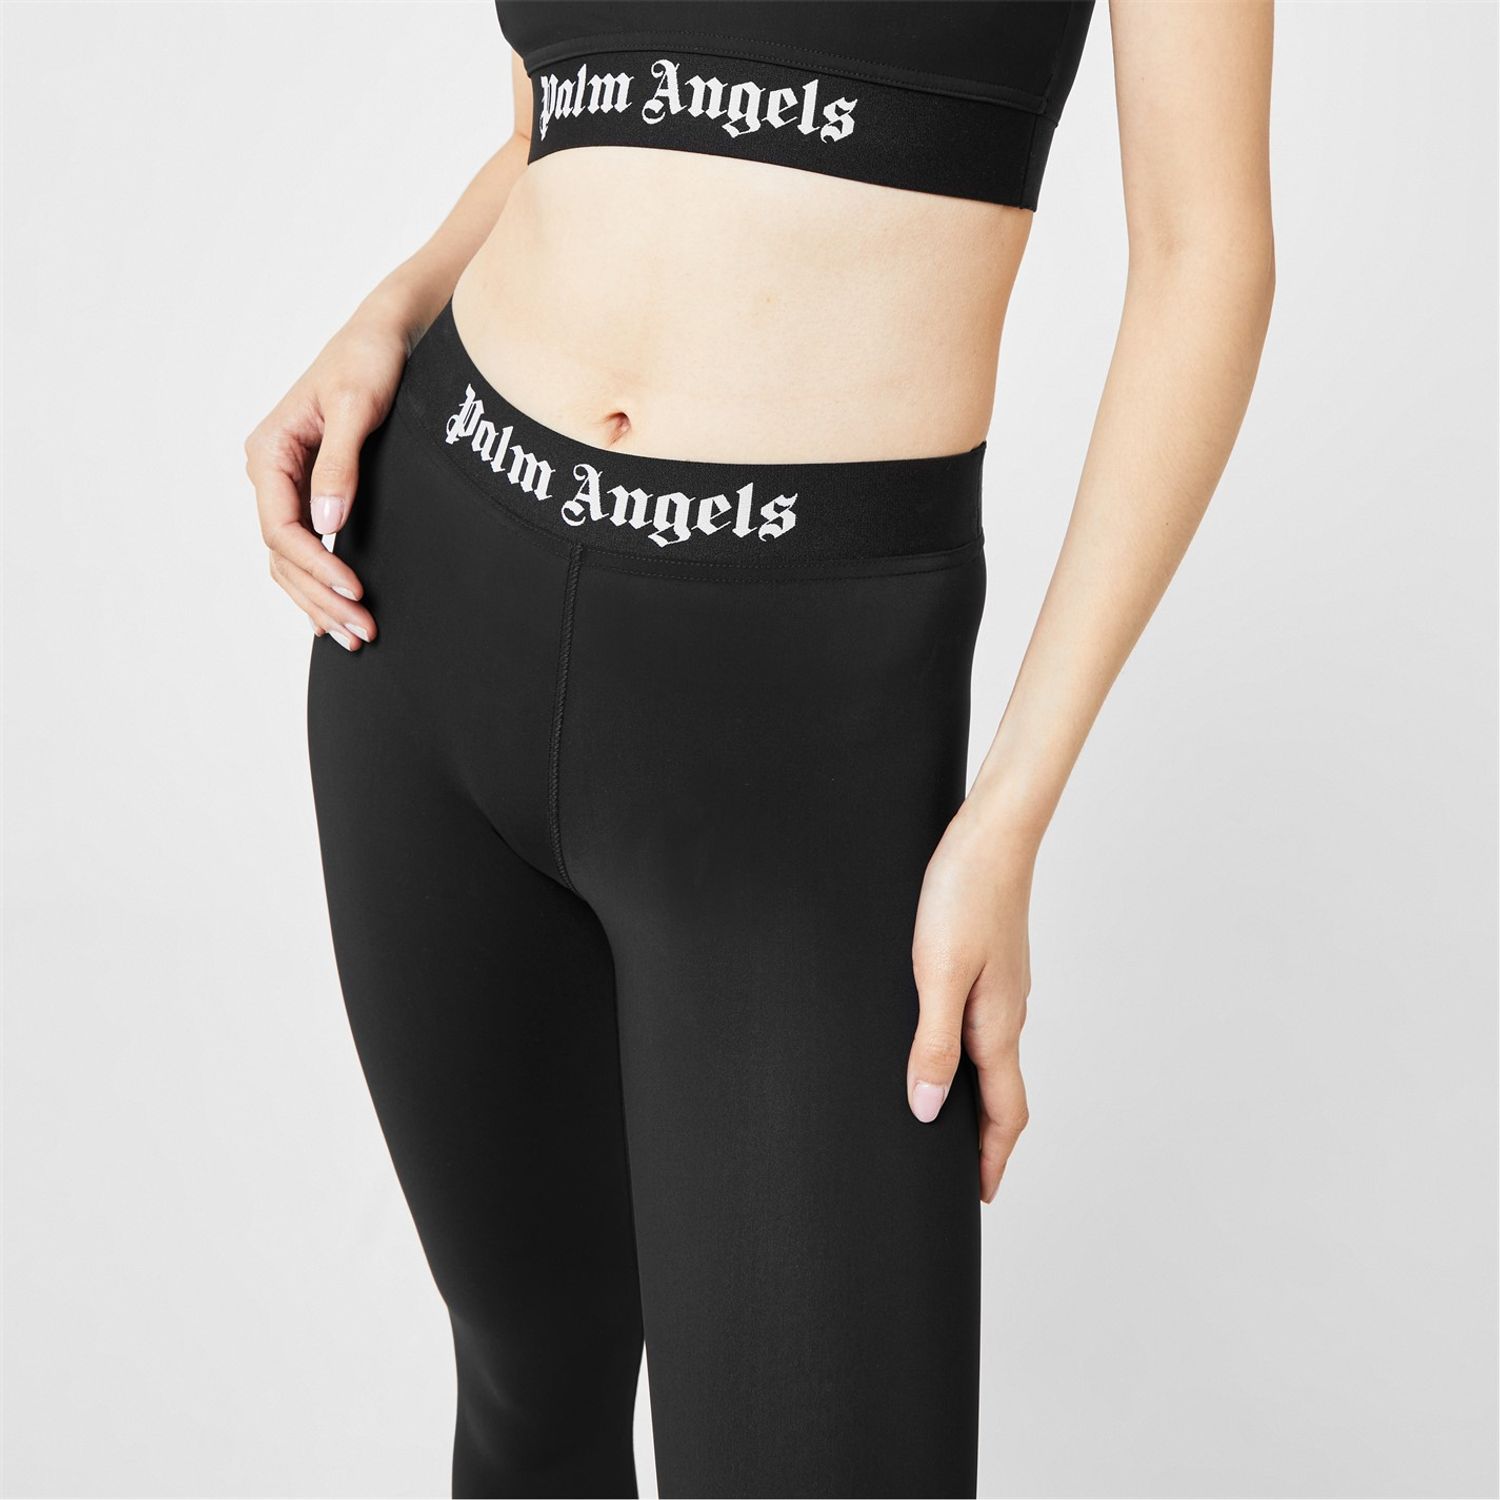 https://gtl-uk.prod.myauroraassets.com/p/458718/logo-leggings-fr1921685palm-angels-logo-leggings-fr1921685.jpg?t=rp&w=1500&h=1500